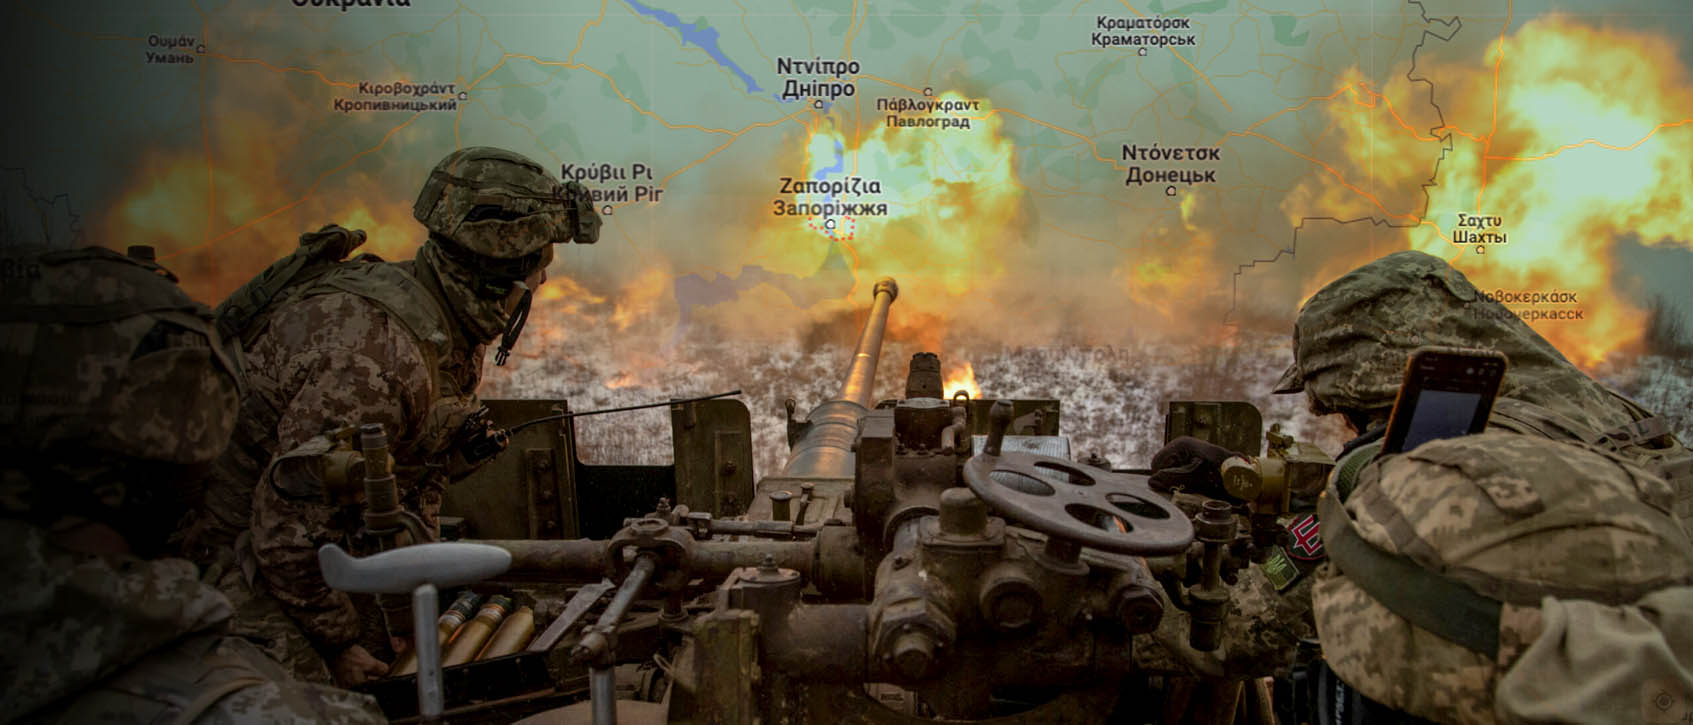 Σε ήττα κατέληξε η πρώτη μεγάλη ουκρανική επίθεση στην Ζαπορίζια: Τι θα συμβεί τις επόμενες ημέρες (upd)